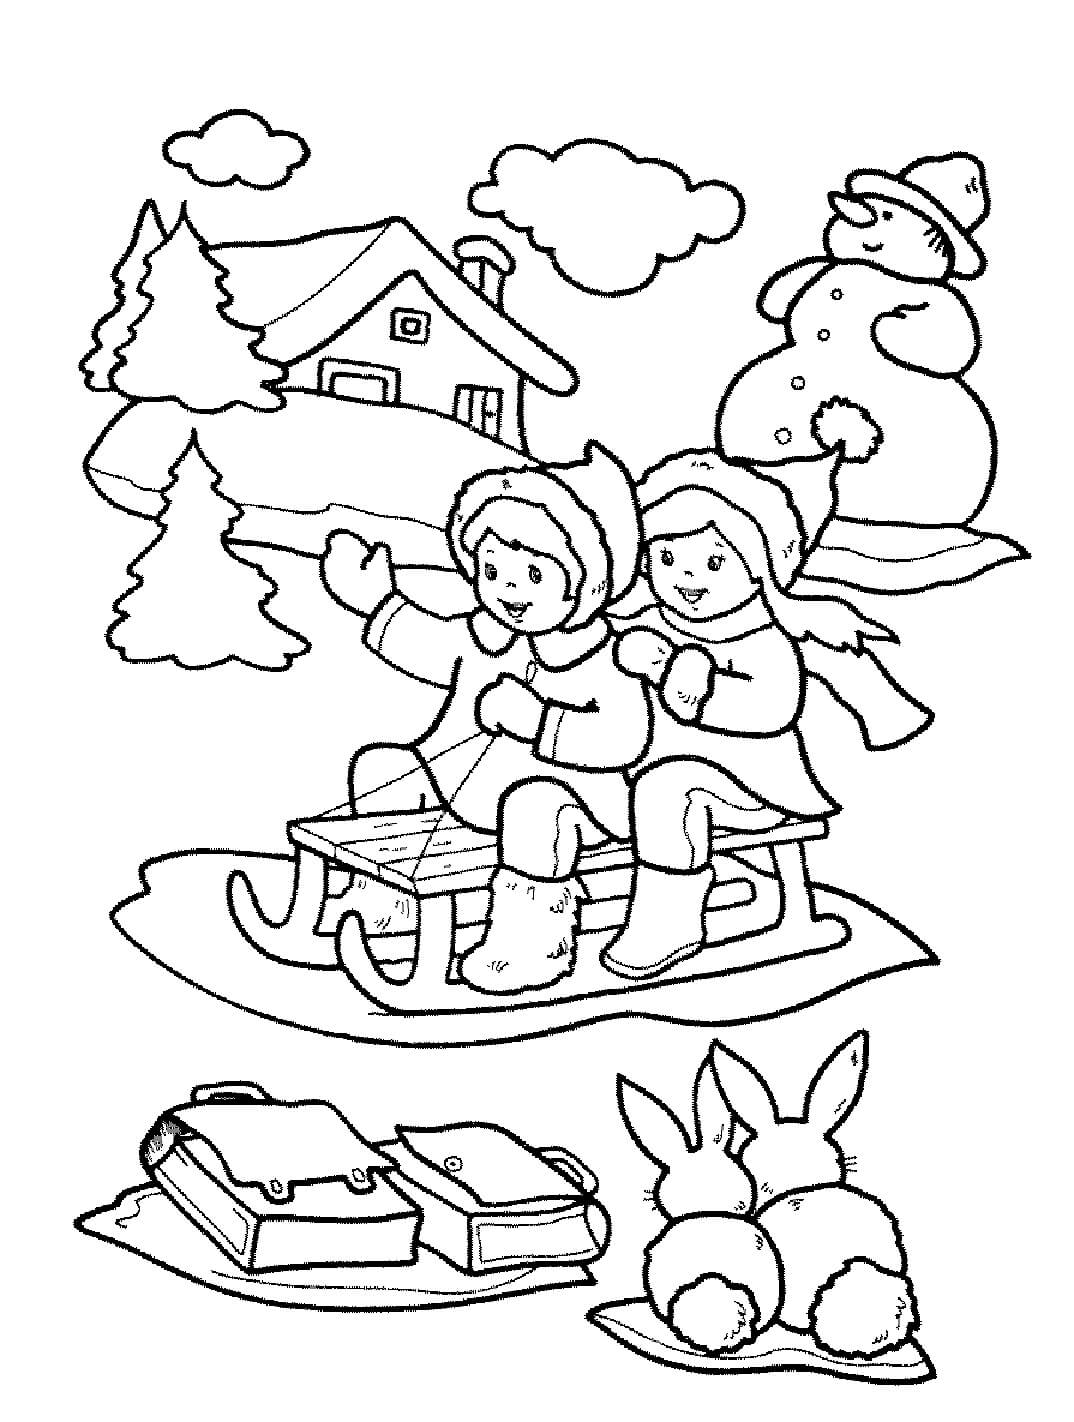 Desenhos de Duas Crianças Em Um Trenó Com Coelhos E Um Boneco De Neve para colorir